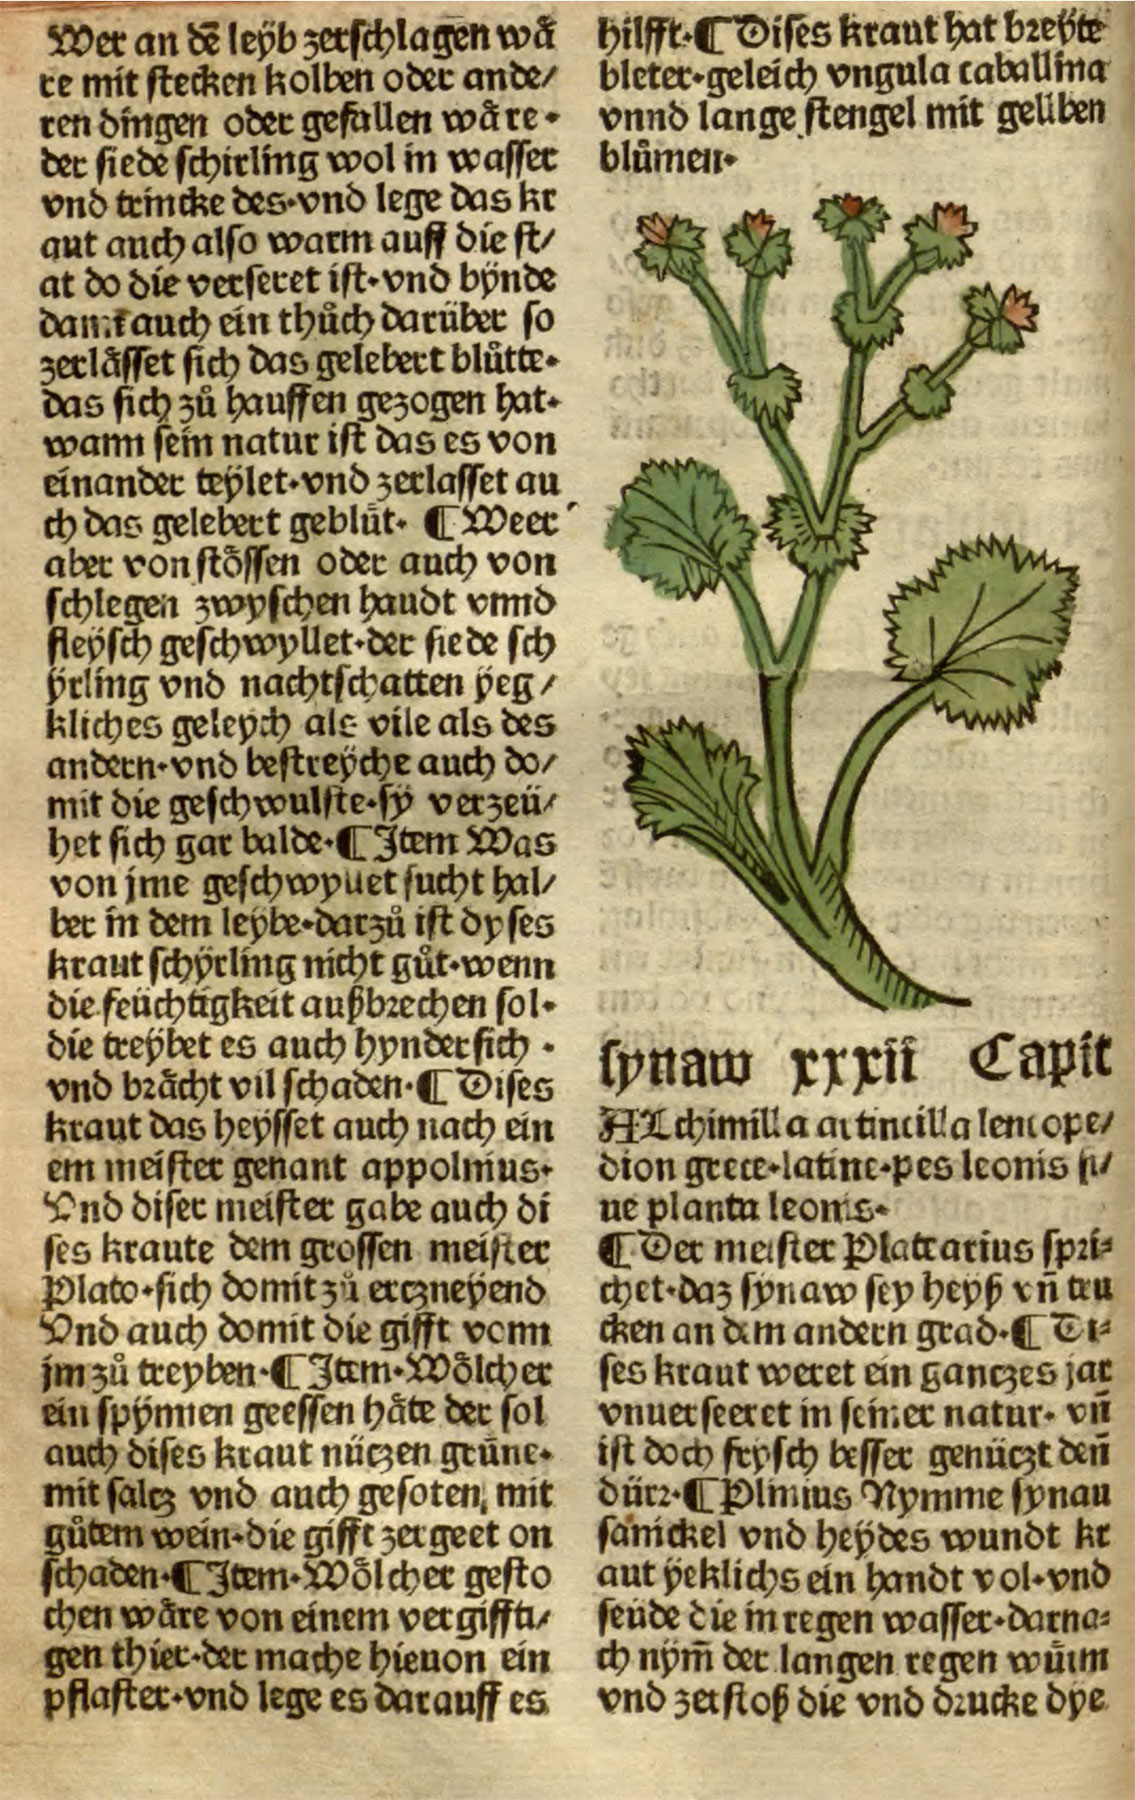 Страницы из печатной книгb «Сад здравия» с изображением и описанием манжетки.